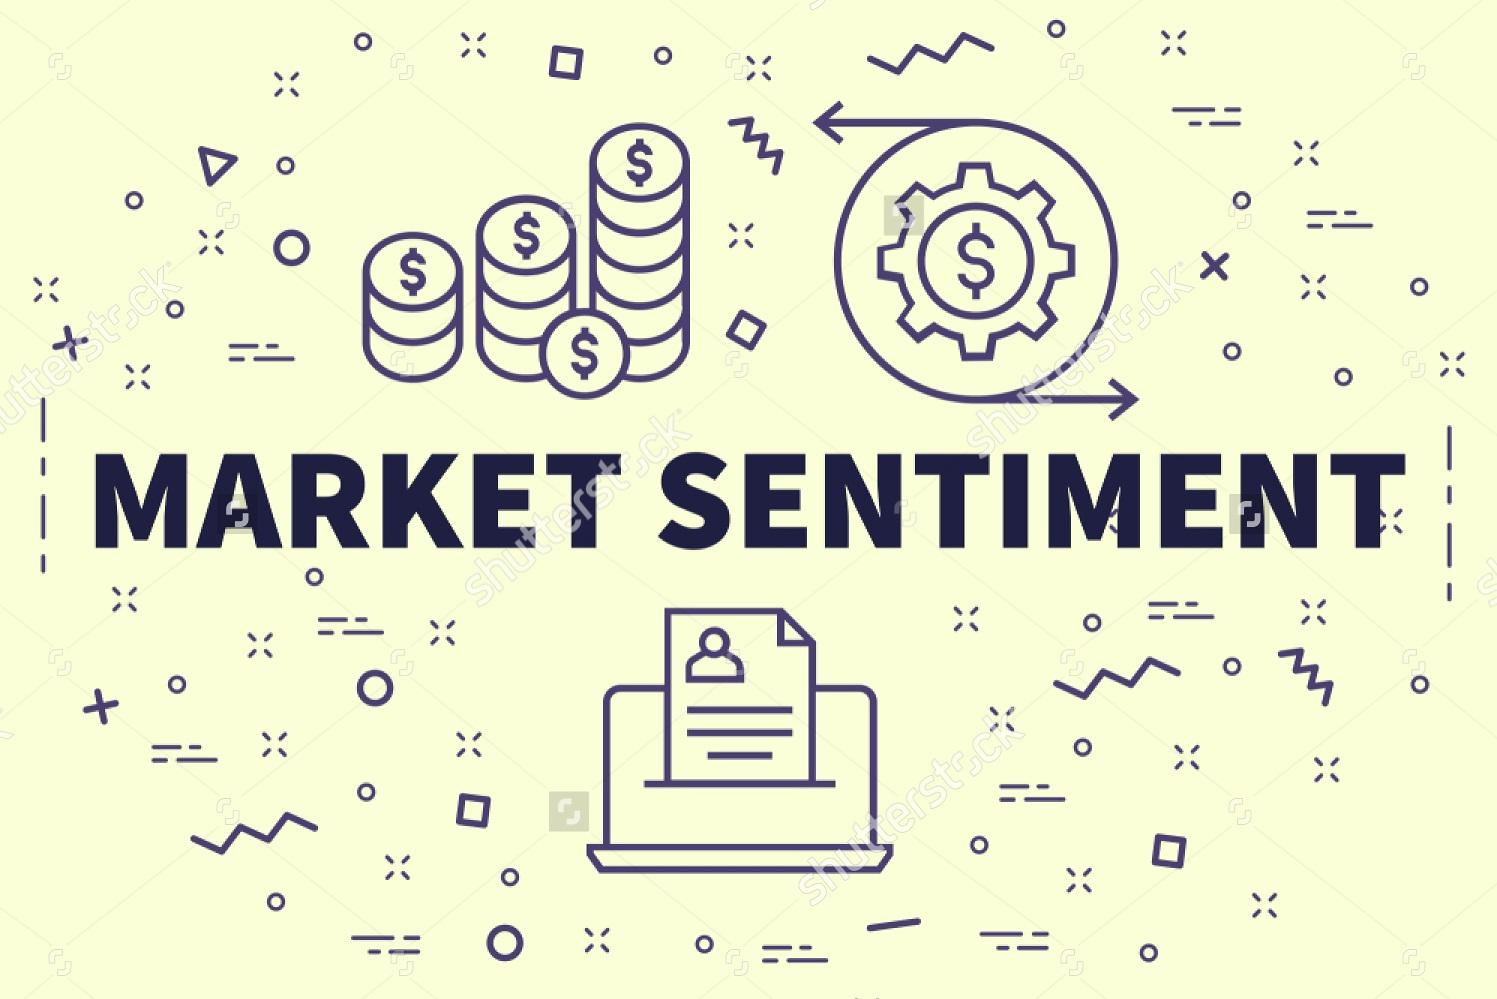 Phân tích Market sentiment – Hướng dẫn sử dụng báo cáo COT (Commitment of Traders)